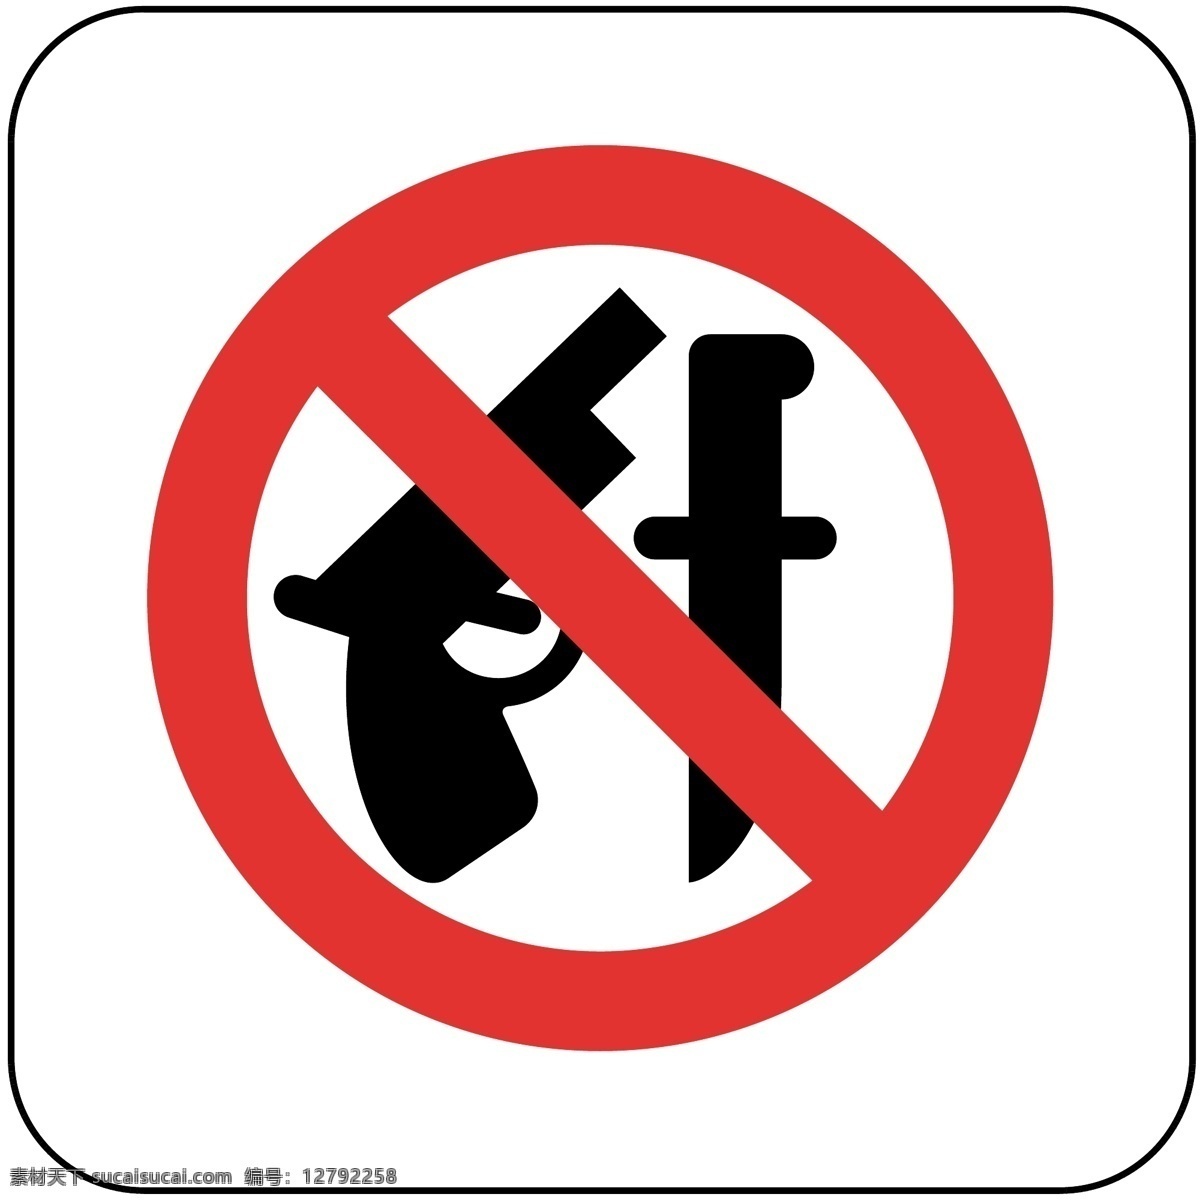 禁止 携带 管制 刀具 禁止携带 民警 治安 防控 火车站 汽车站 安全警示 标识 标语 符号 标志图标 公共标识标志